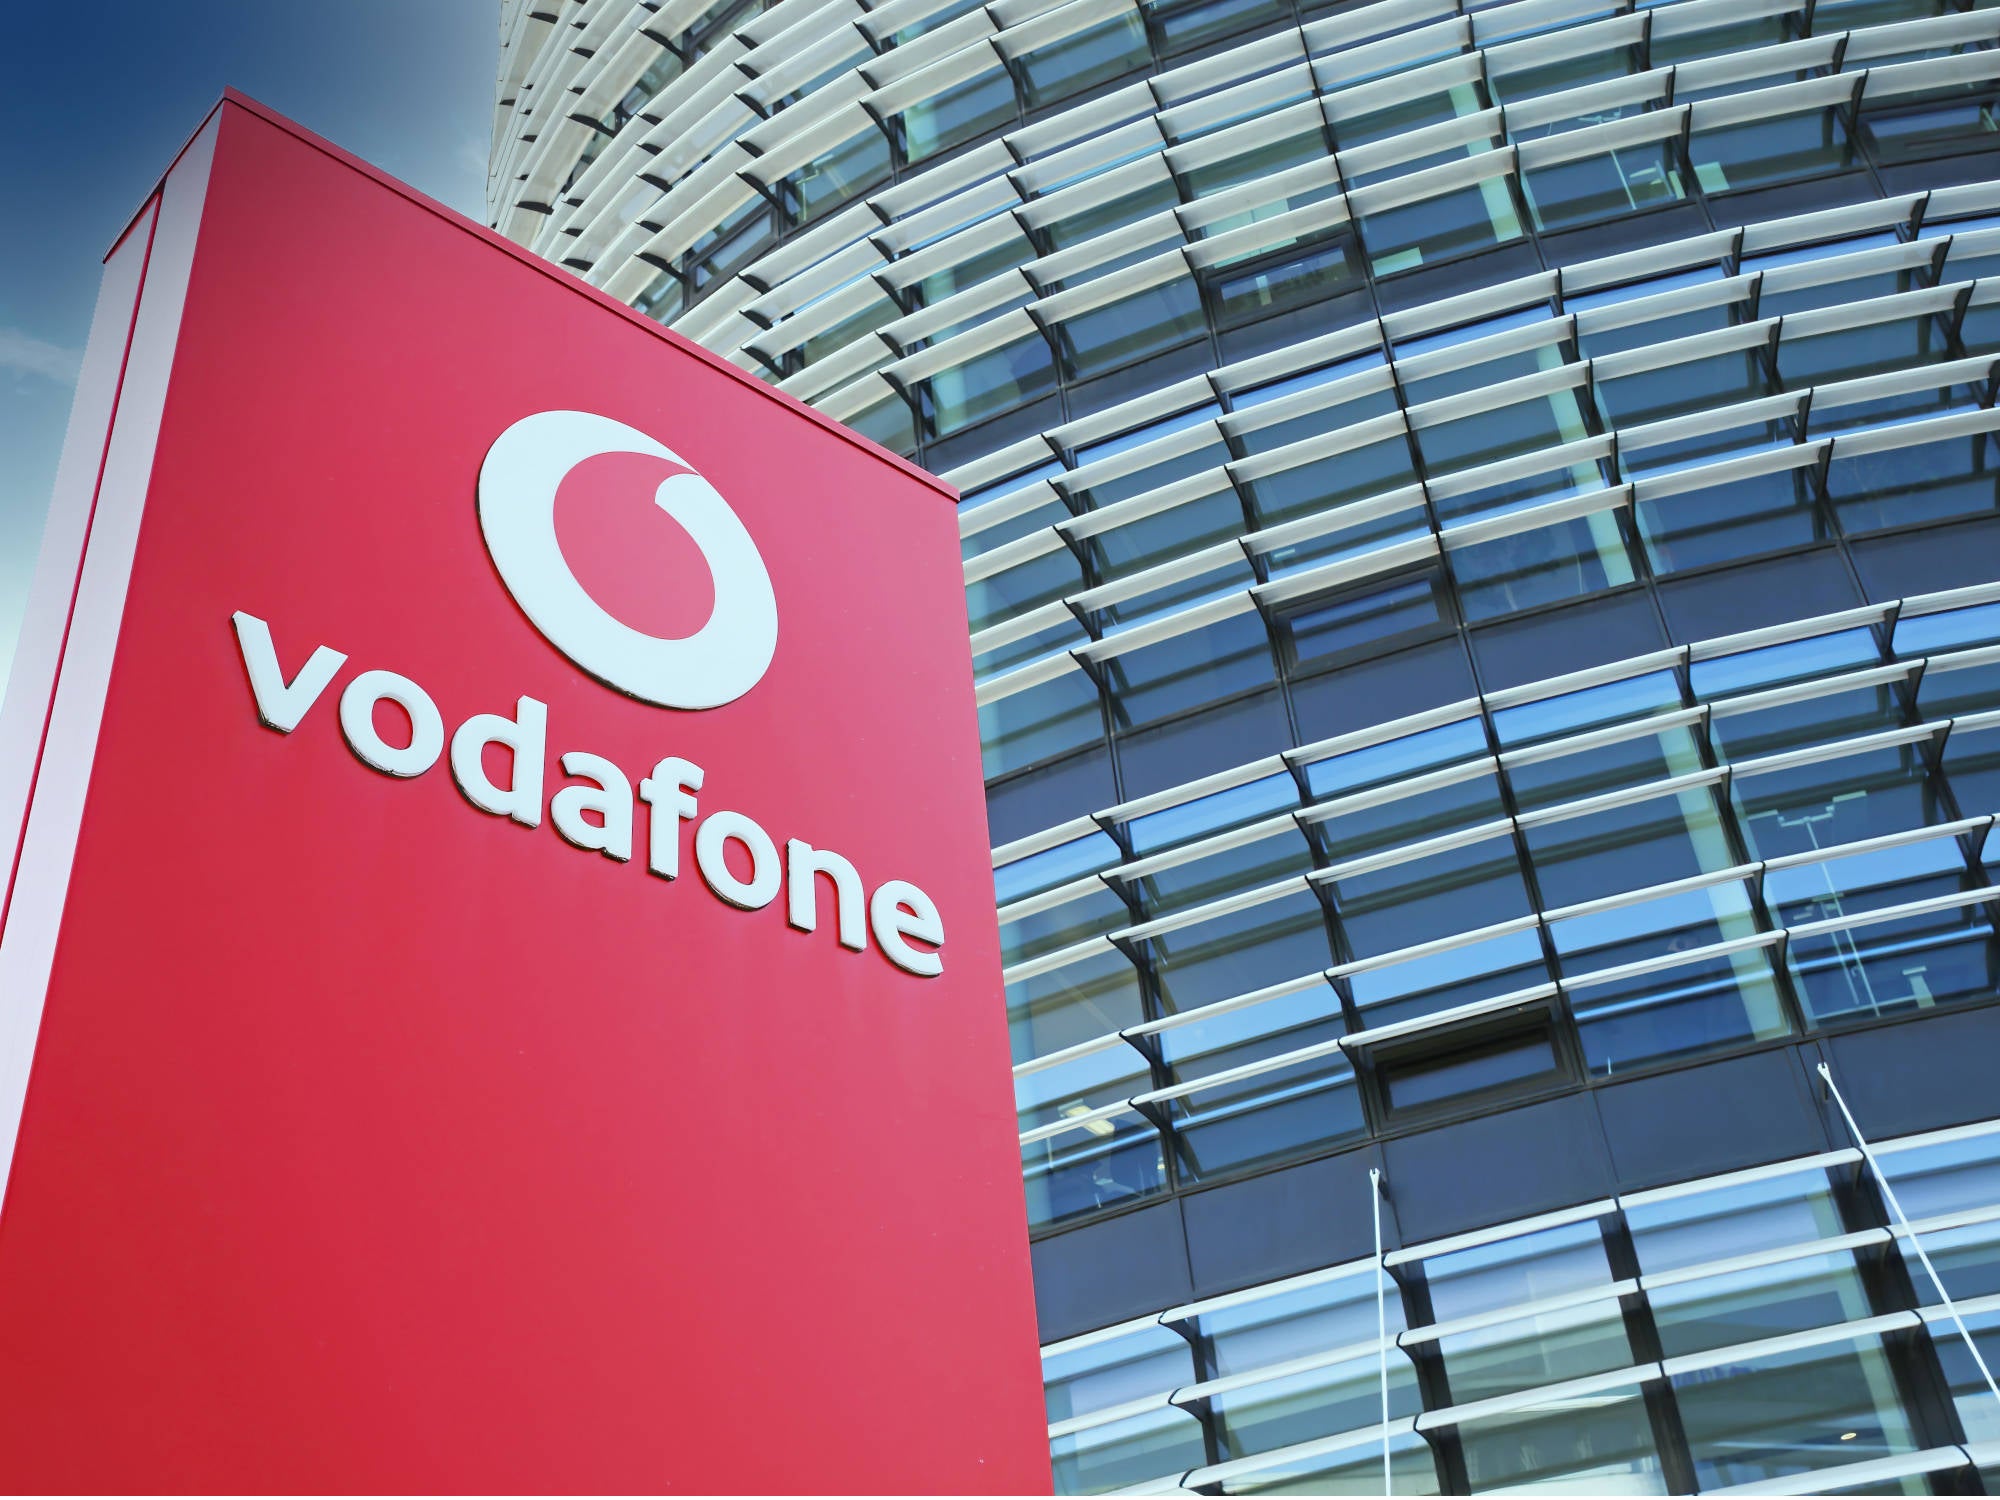 #Vodafone: Kundenflucht nimmt erschreckende Ausmaße an